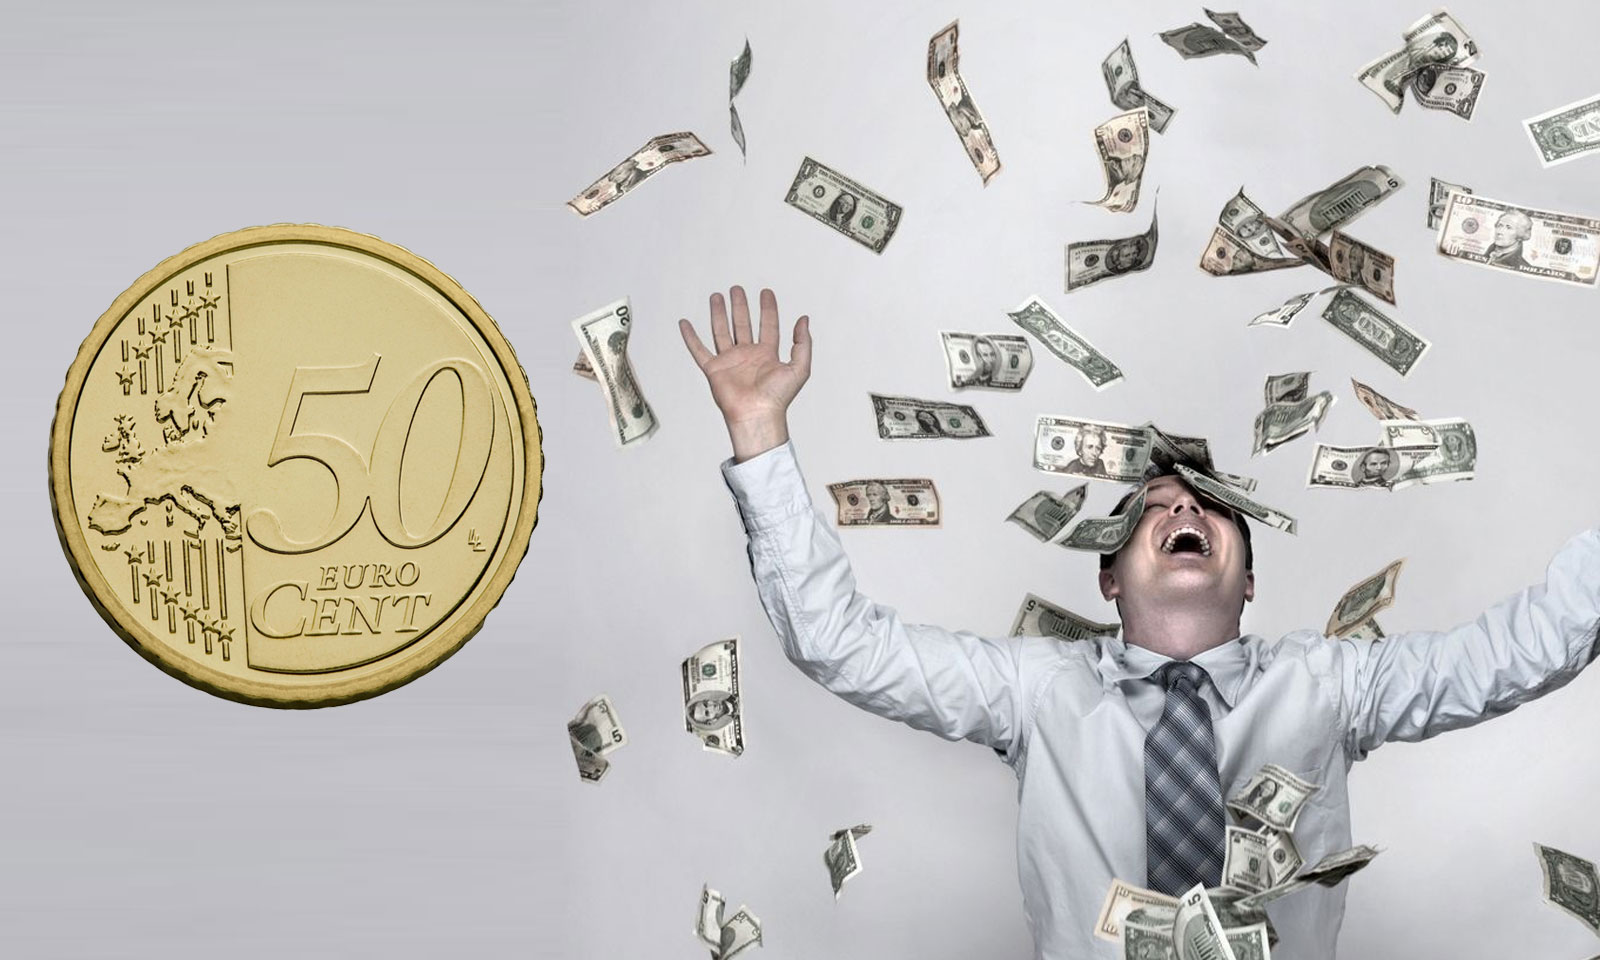 Regardez dans vos portes-monnaies, une pièce de 1 centime pourrait valoir  plus de 50 000 euros !